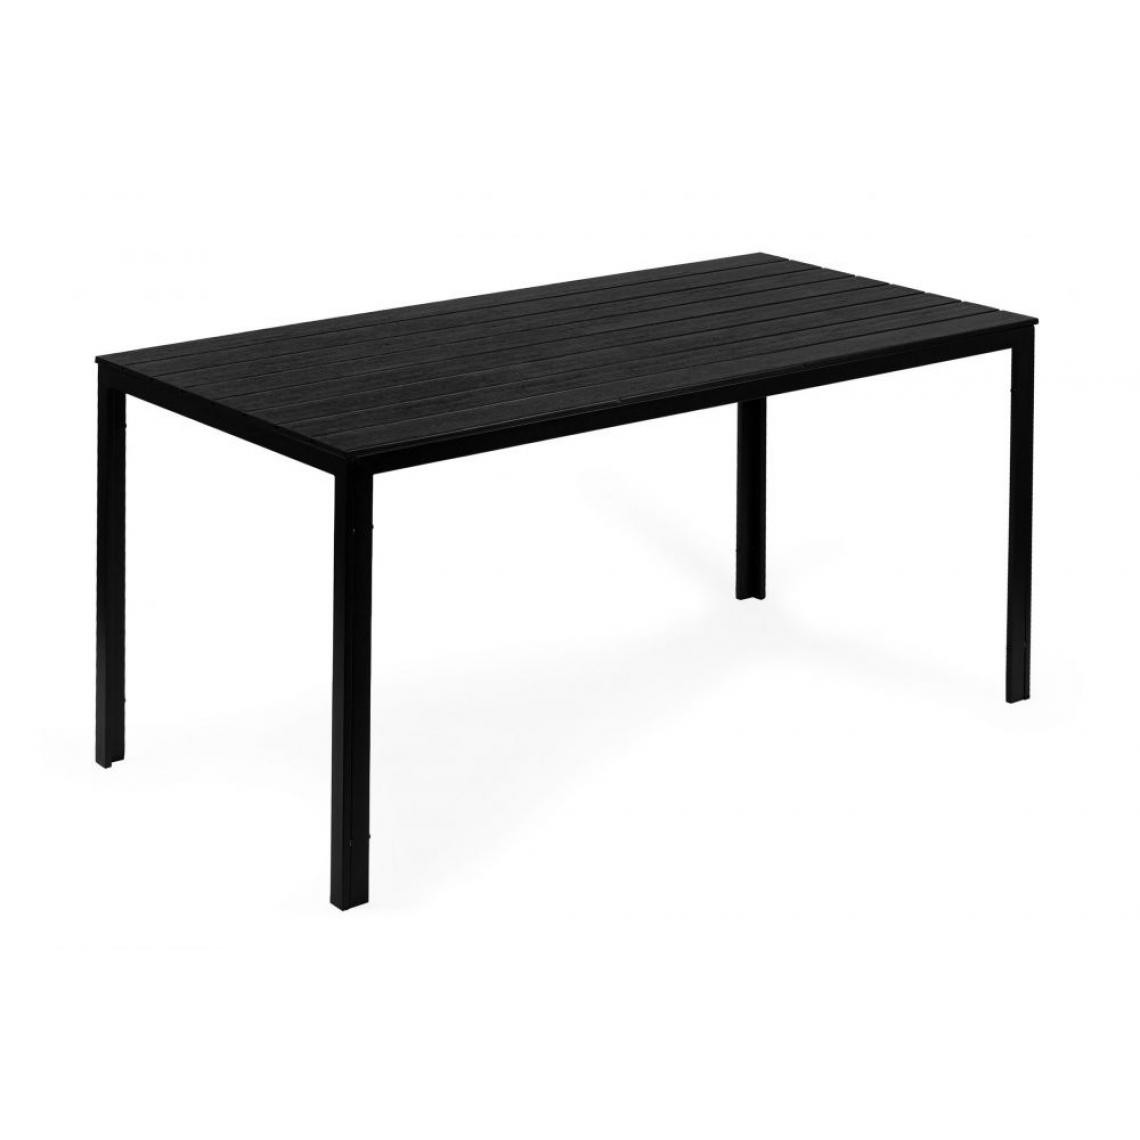 Hucoco - MSTORE - Table de jardin rectangulaire style moderne - 156x78x74 - Pieds en métal - Noir - Tables de jardin